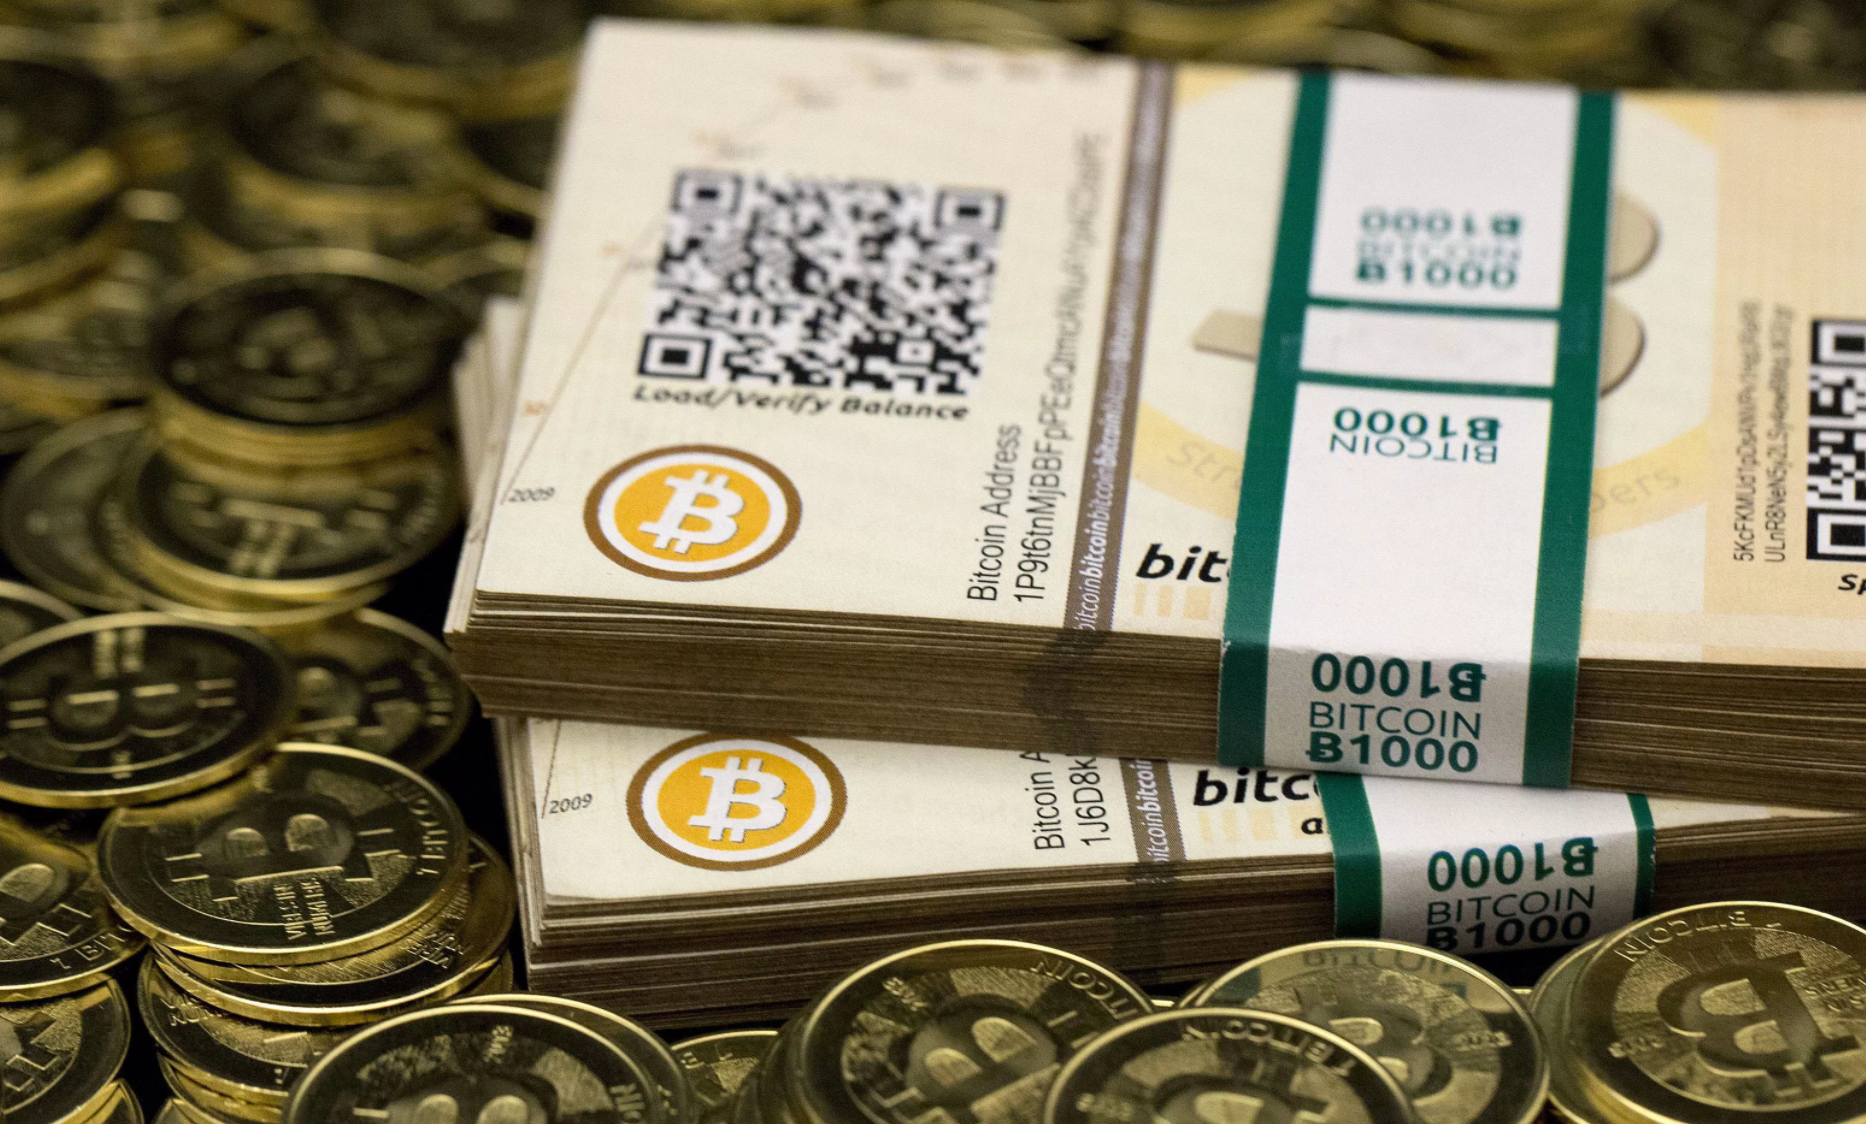 Bitcoin Cash Passa A Ser Suportado Pela Coinbase E Tem Valorizacao - 